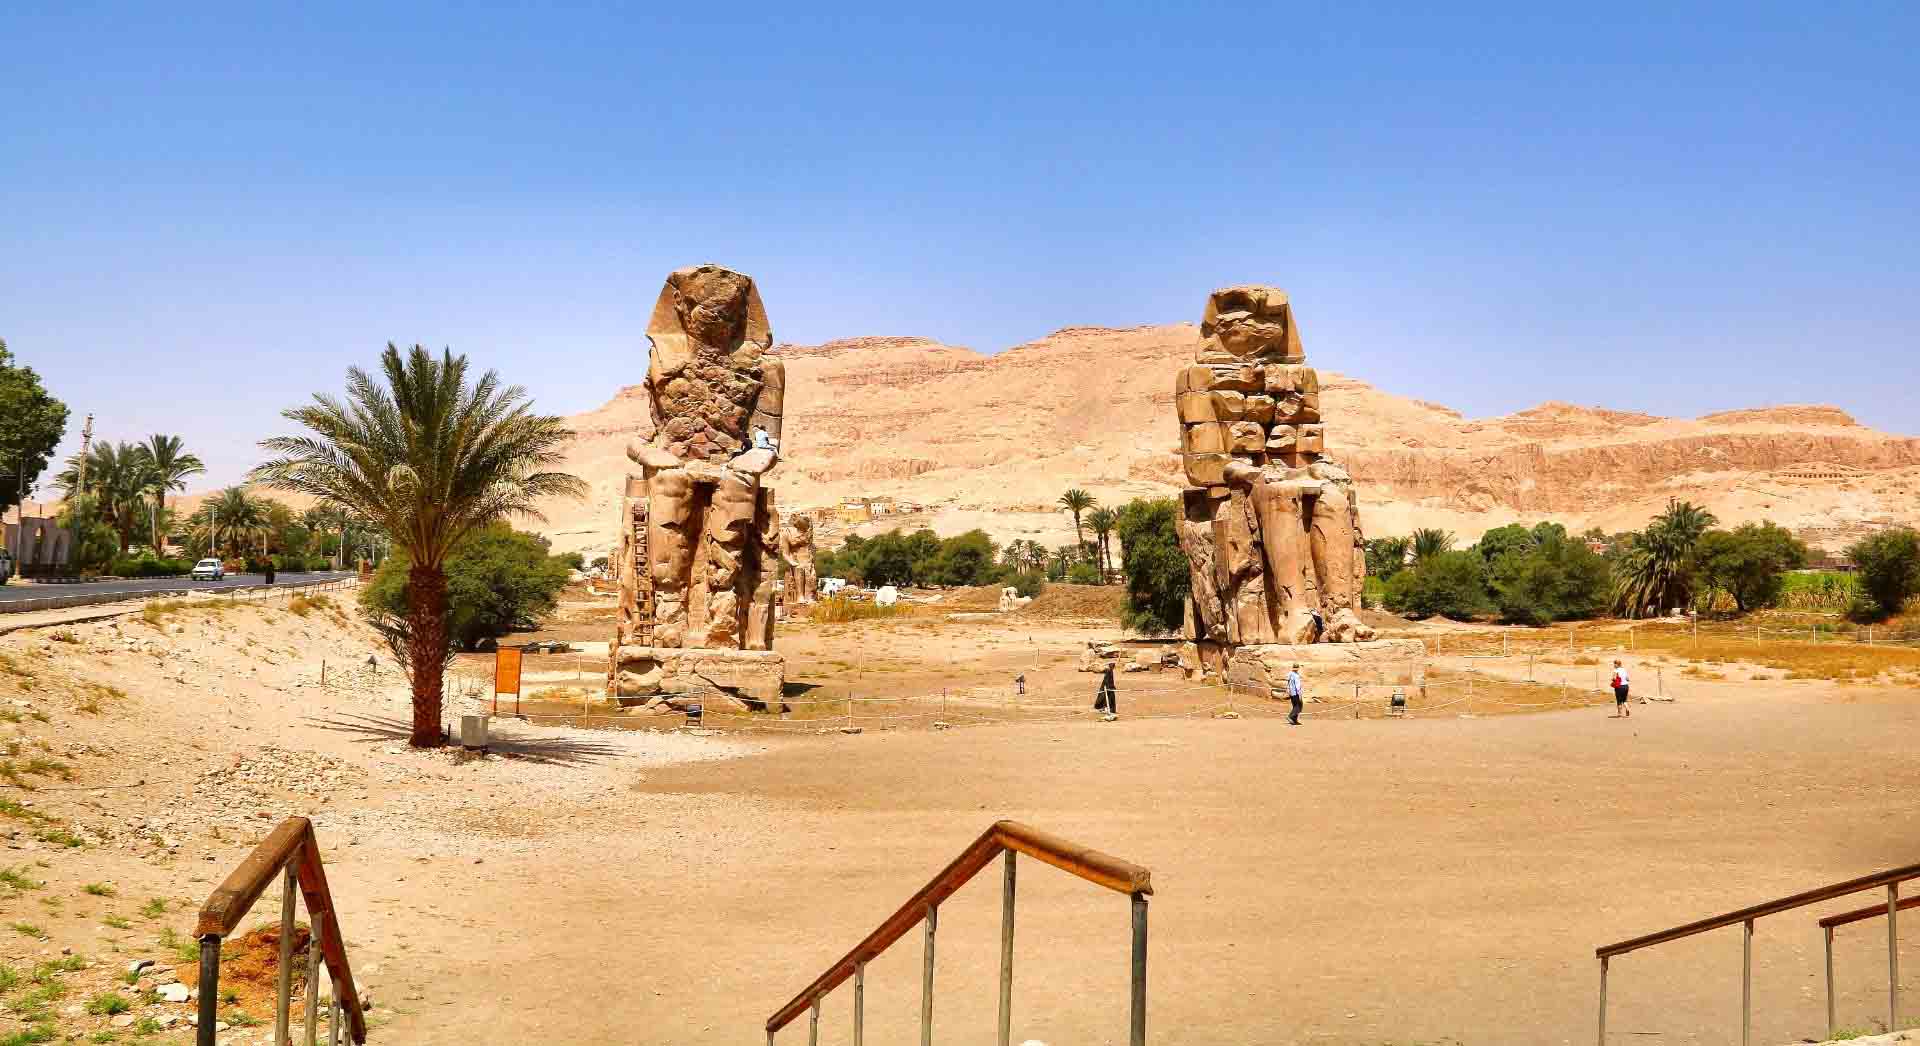 Comment s’habiller lors d’un voyage en Egypte? – Actualité Egypte